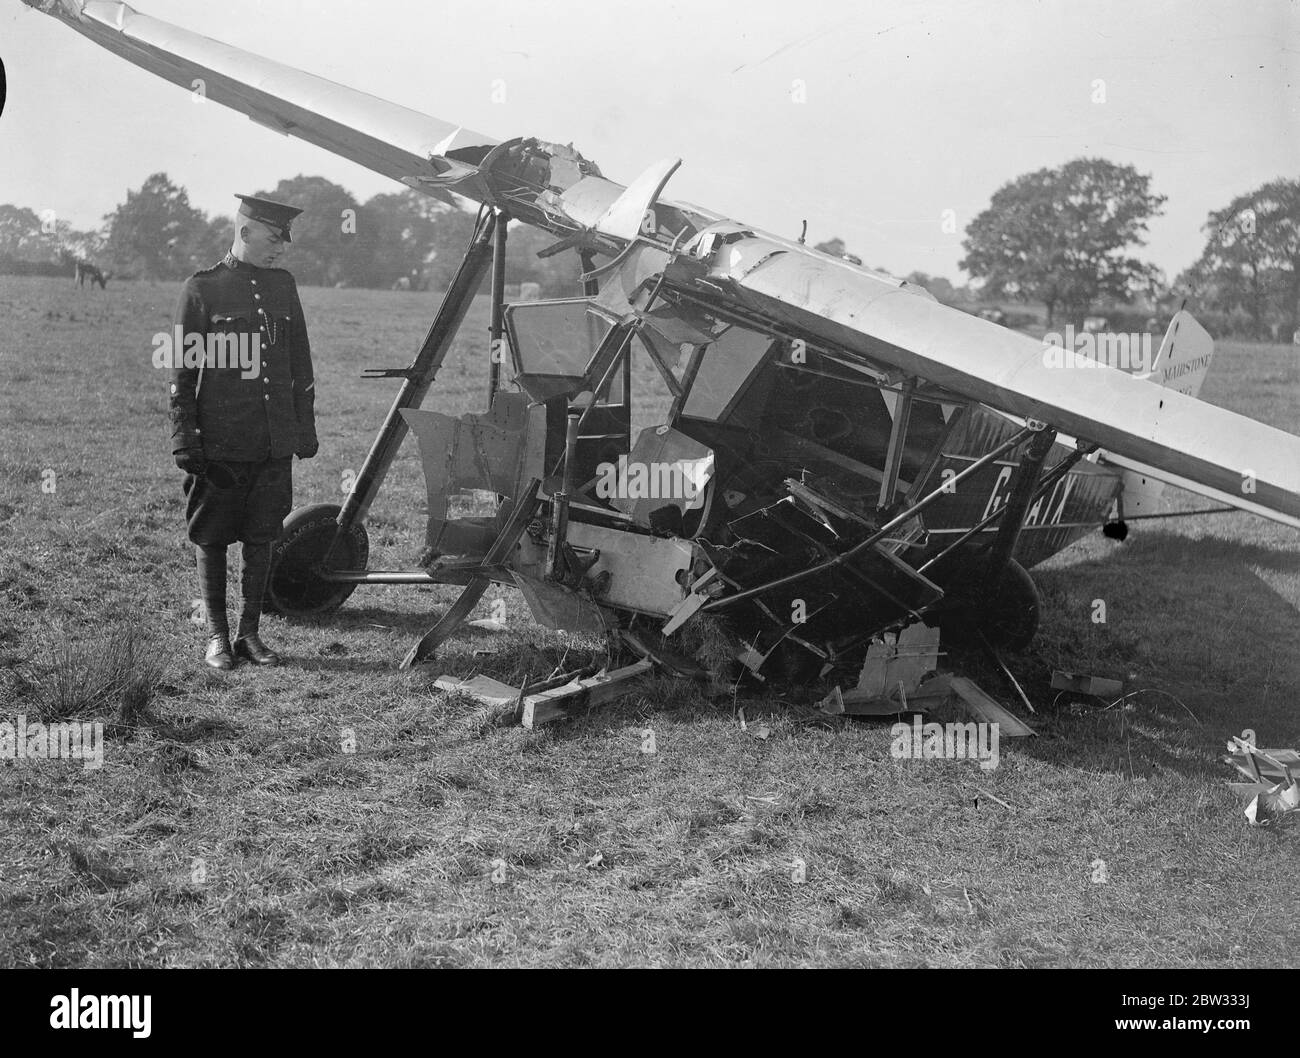 Due donne infortunate in aereo Edenbridge crash . La sig.ra Beryl Baker e la sig.ra Phyllis Morgan , entrambe di Bristol , sono rimaste ferite quando il monoplano in cui volavano a Maidstone da Bristol si schiantò a Edenbridge Kent . Il motore si è staccato dall'aereo durante l'urto . L'aereo naufragato dopo l'incidente . Notare il motore della macchina a destra . 2 ottobre 1932 Foto Stock